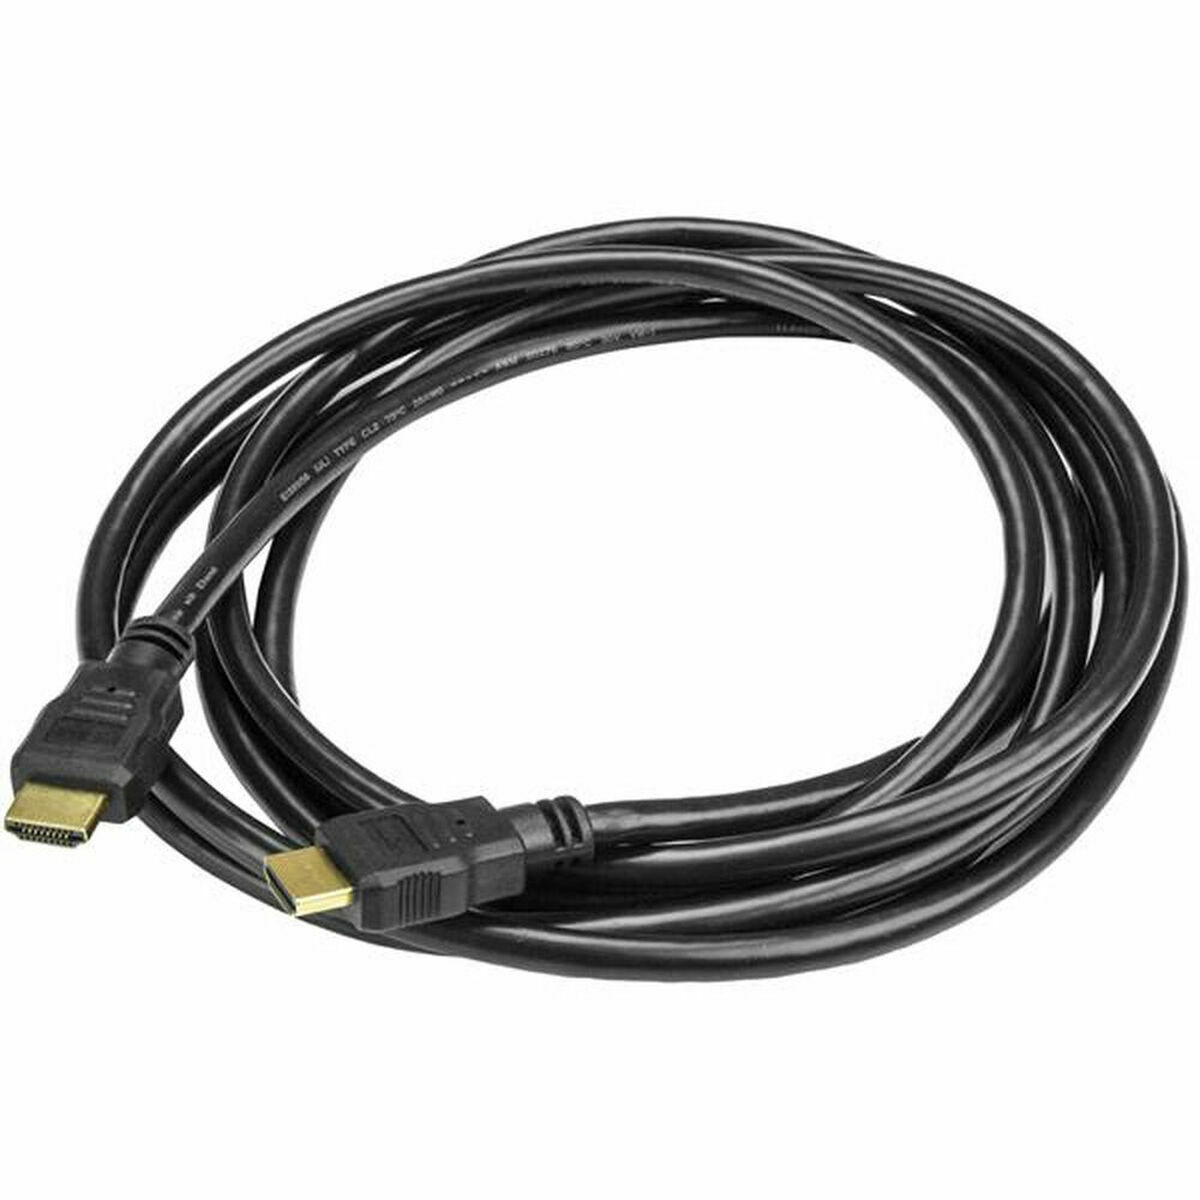 Osta tuote HDMI-kaapeli Startech HDMM3M 3 m 3 m Musta verkkokaupastamme Korhone: Tietokoneet & Elektroniikka 10% alennuksella koodilla KORHONE